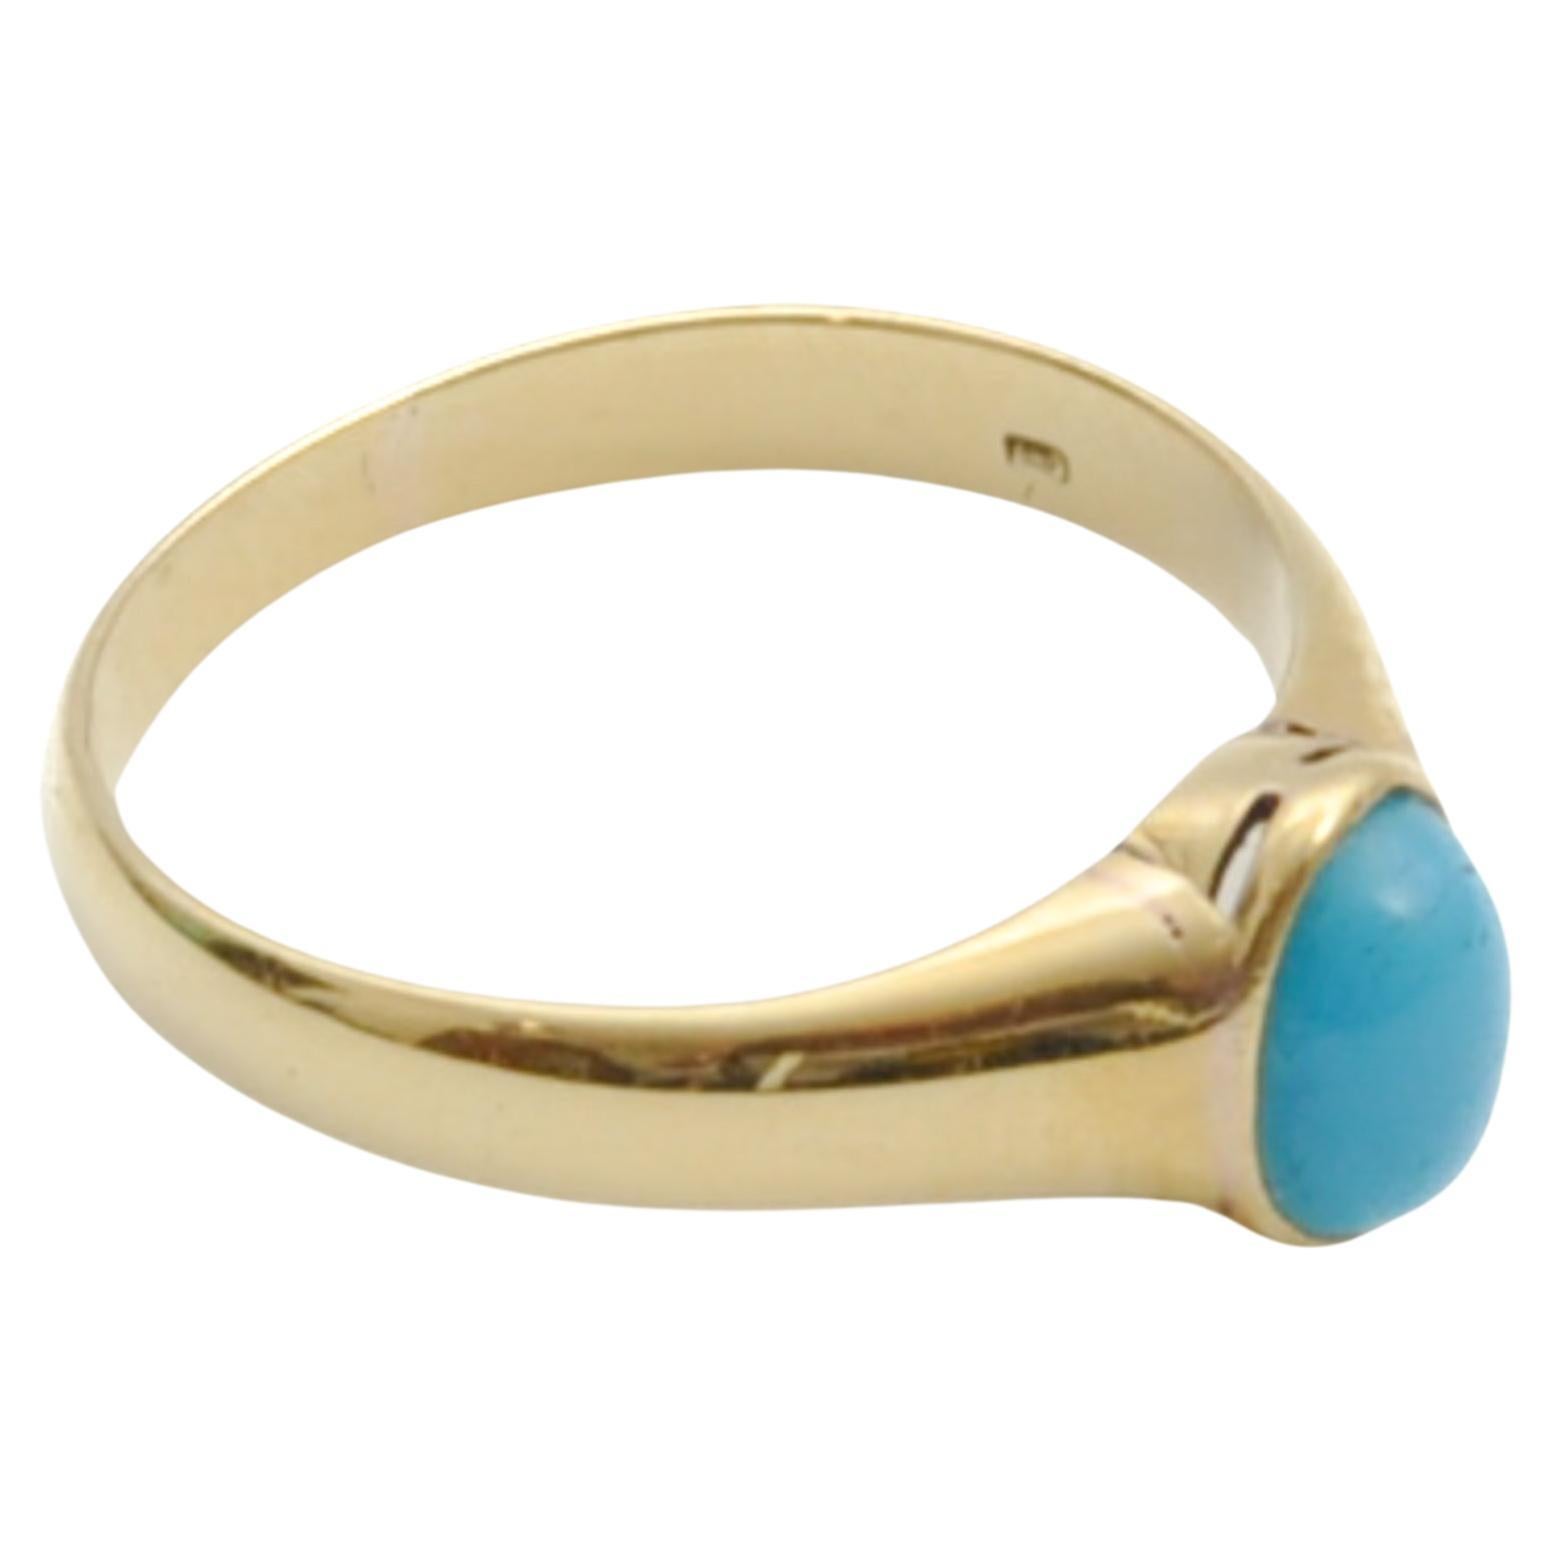 Vintage Turquoise and 14 Karat Gold Ring